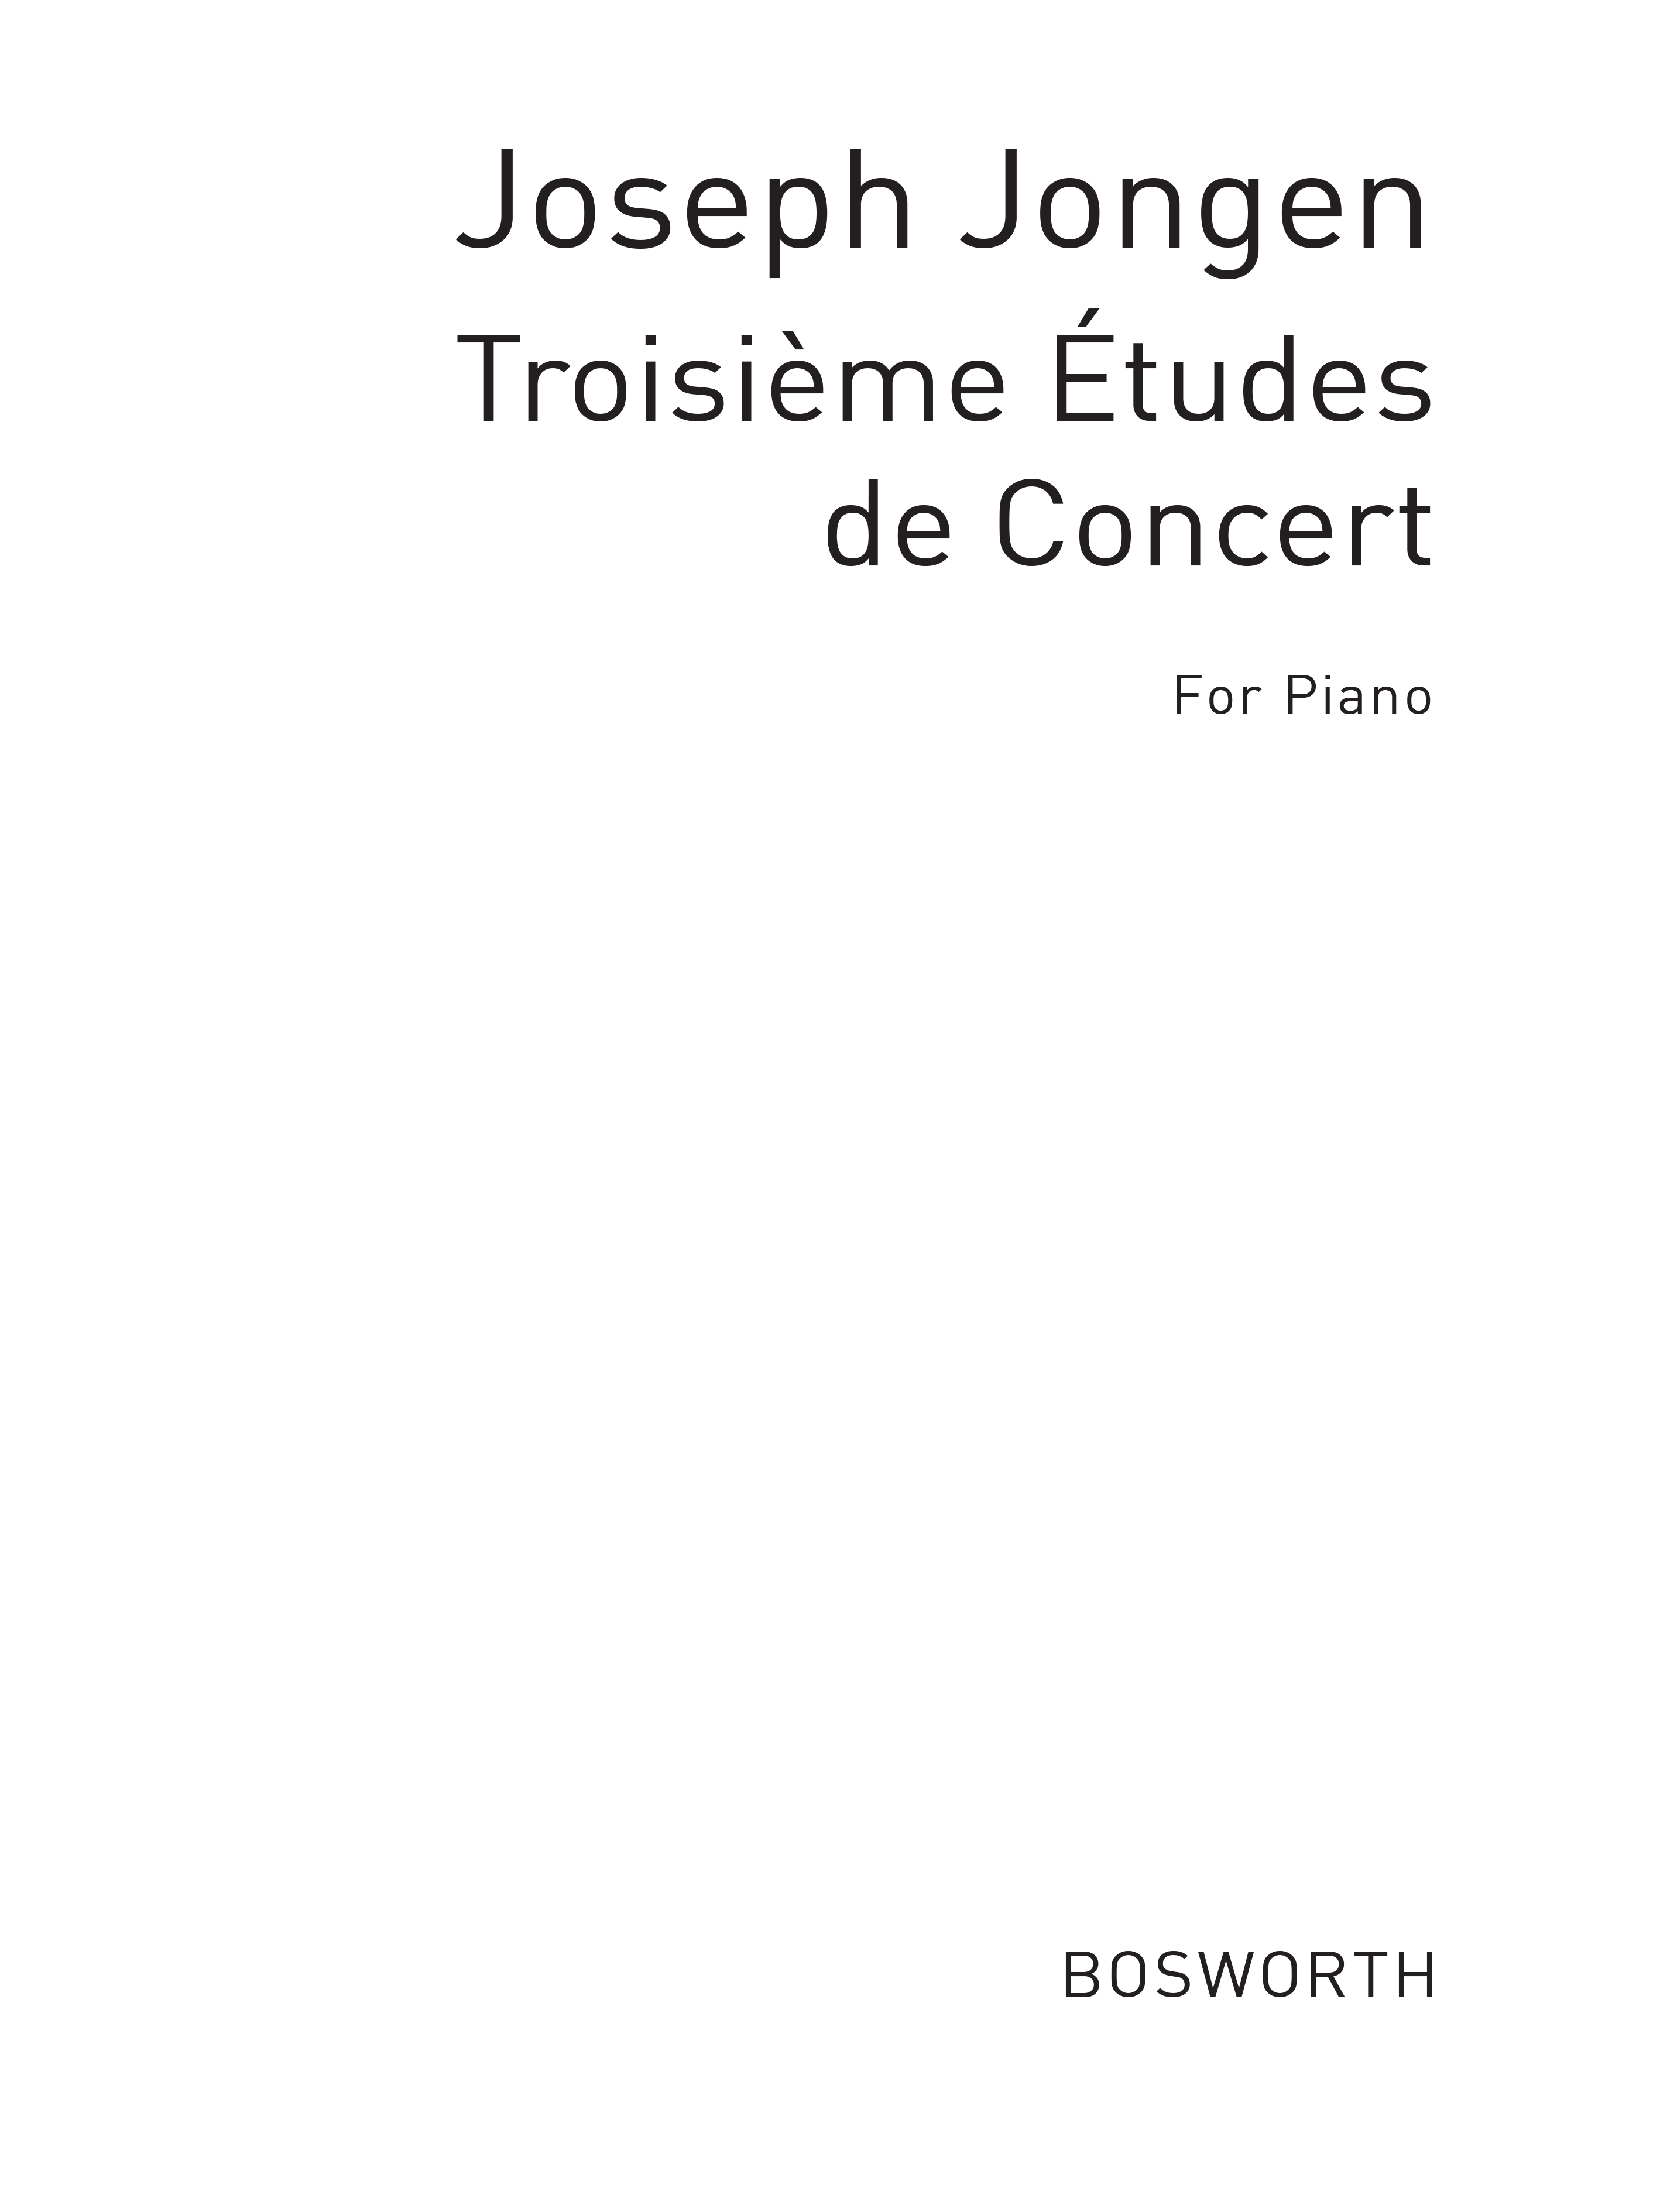 Joseph Jongen: Troisieme Etudes De Concert (Piano)